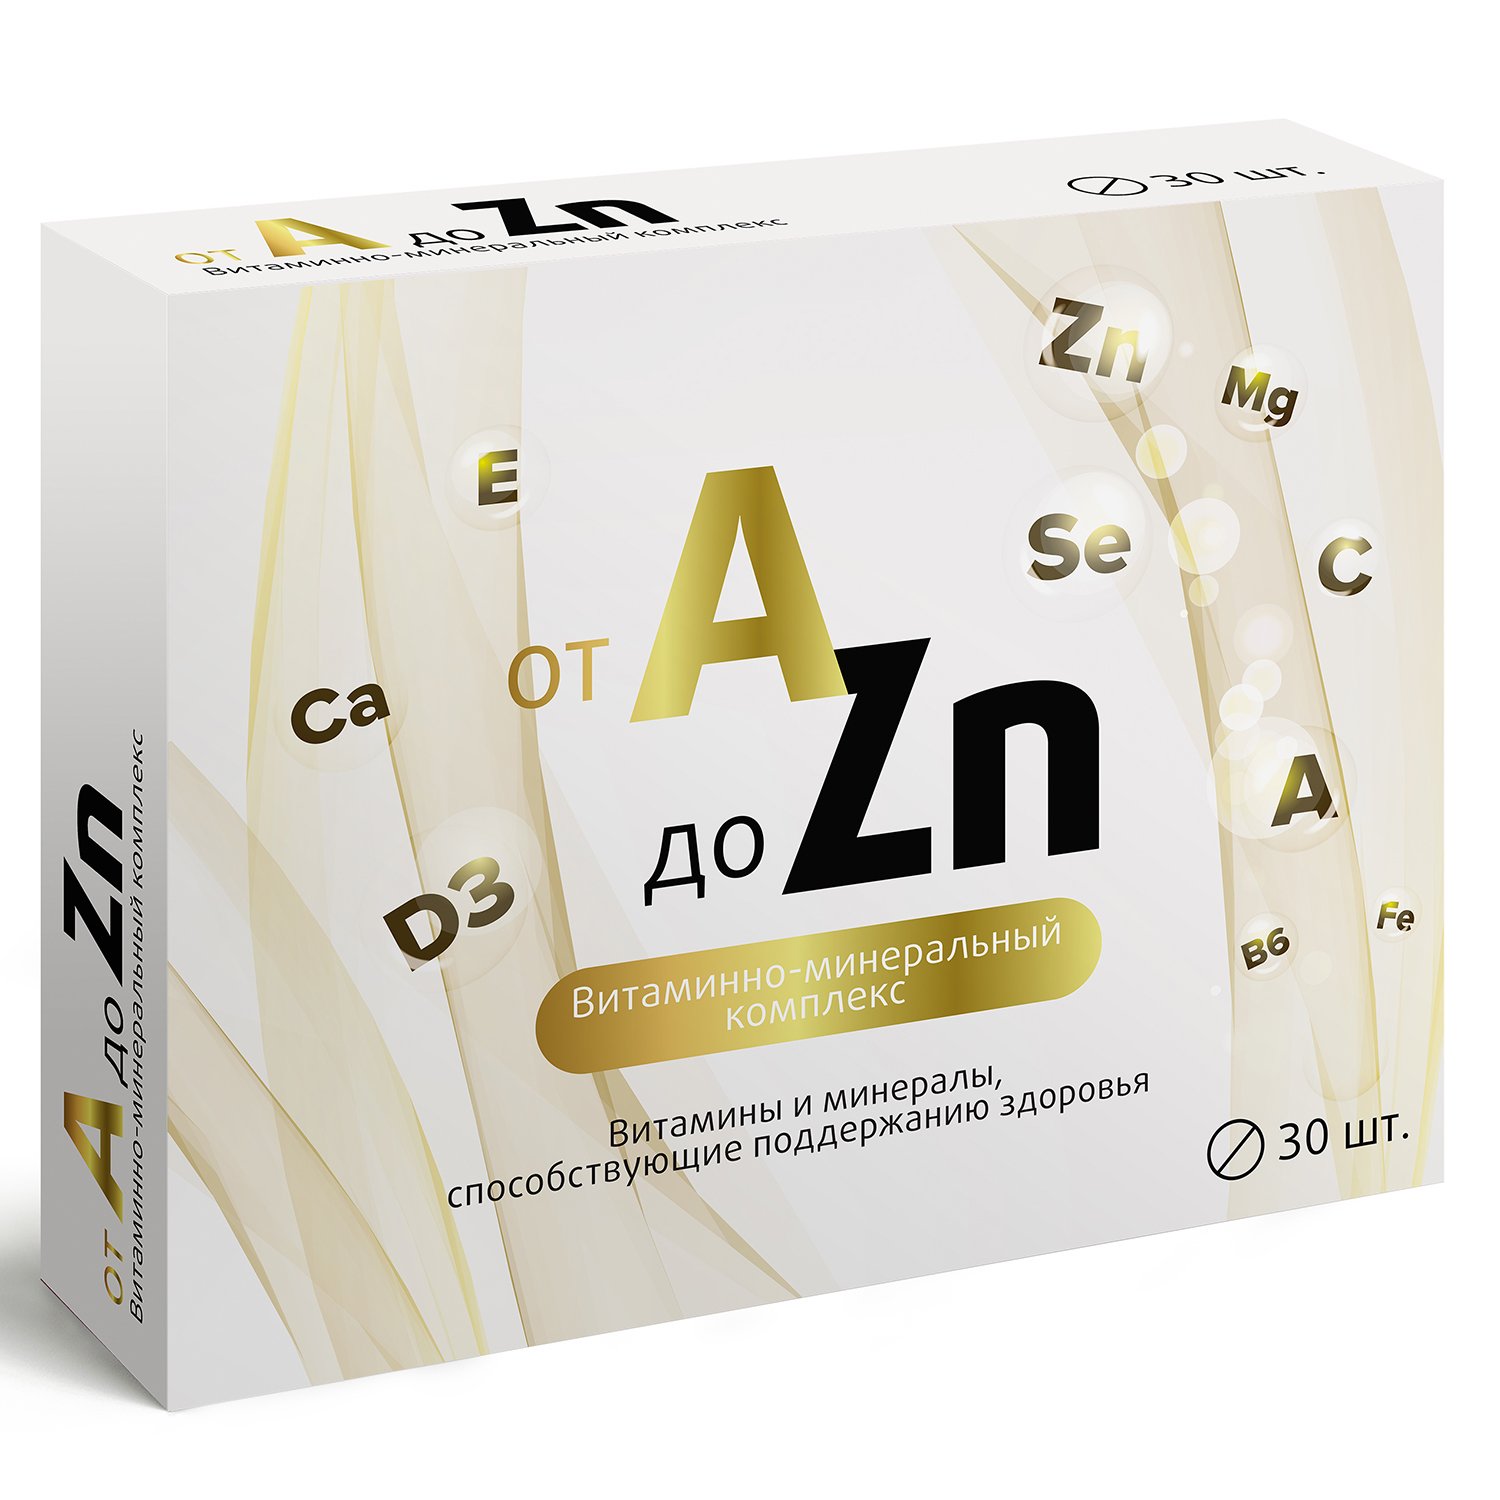 Витаминный комплекс a zn таблетки для мужчин. Витаминно-минеральный комплекс от a до ZN таблетки. Витаминный комплекс a-ZN витамир. Витаминно-минеральный комплекс a-ZN таблетки 630мг №60 импловит.